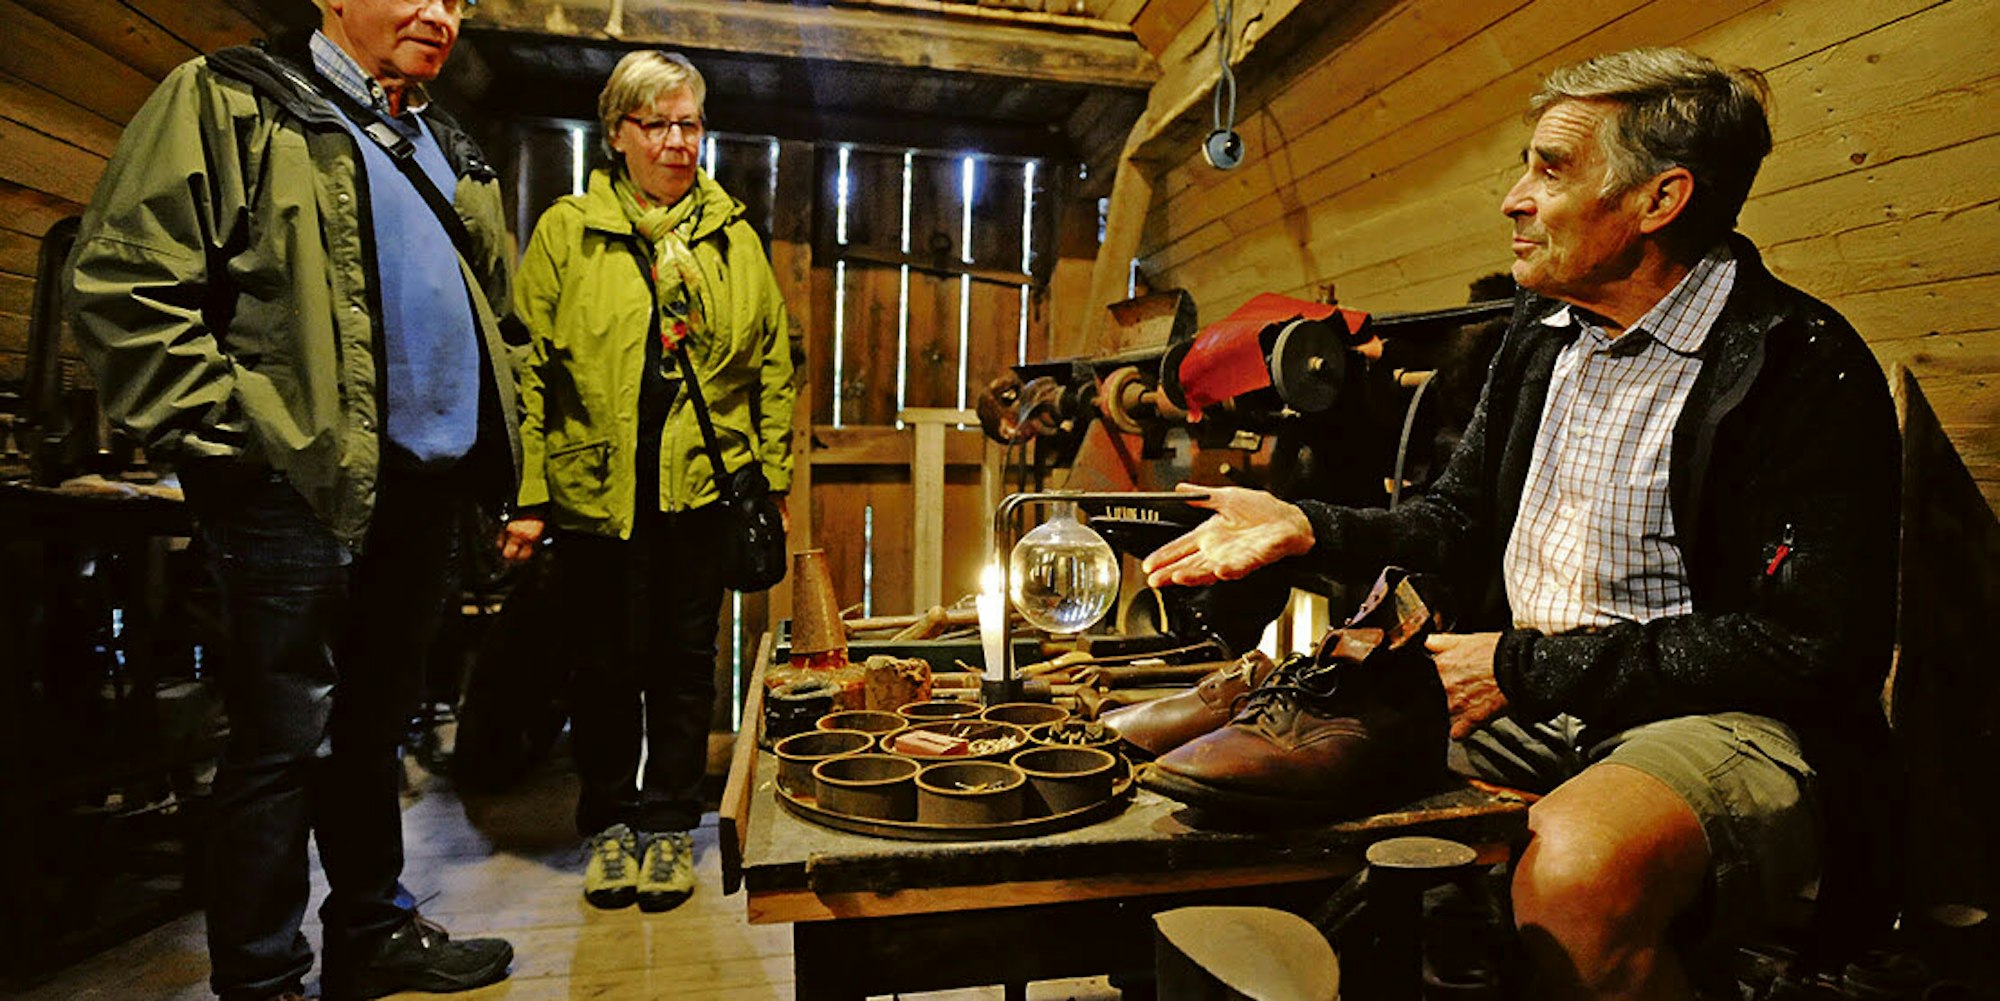 Faszinierender Blick auf die Vergangenheit am Tag des Offenen Denkmals: Armin Busch erklärt Besuchern der Lambertsmühle die Herstellung von Schuhen in früheren Zeiten.